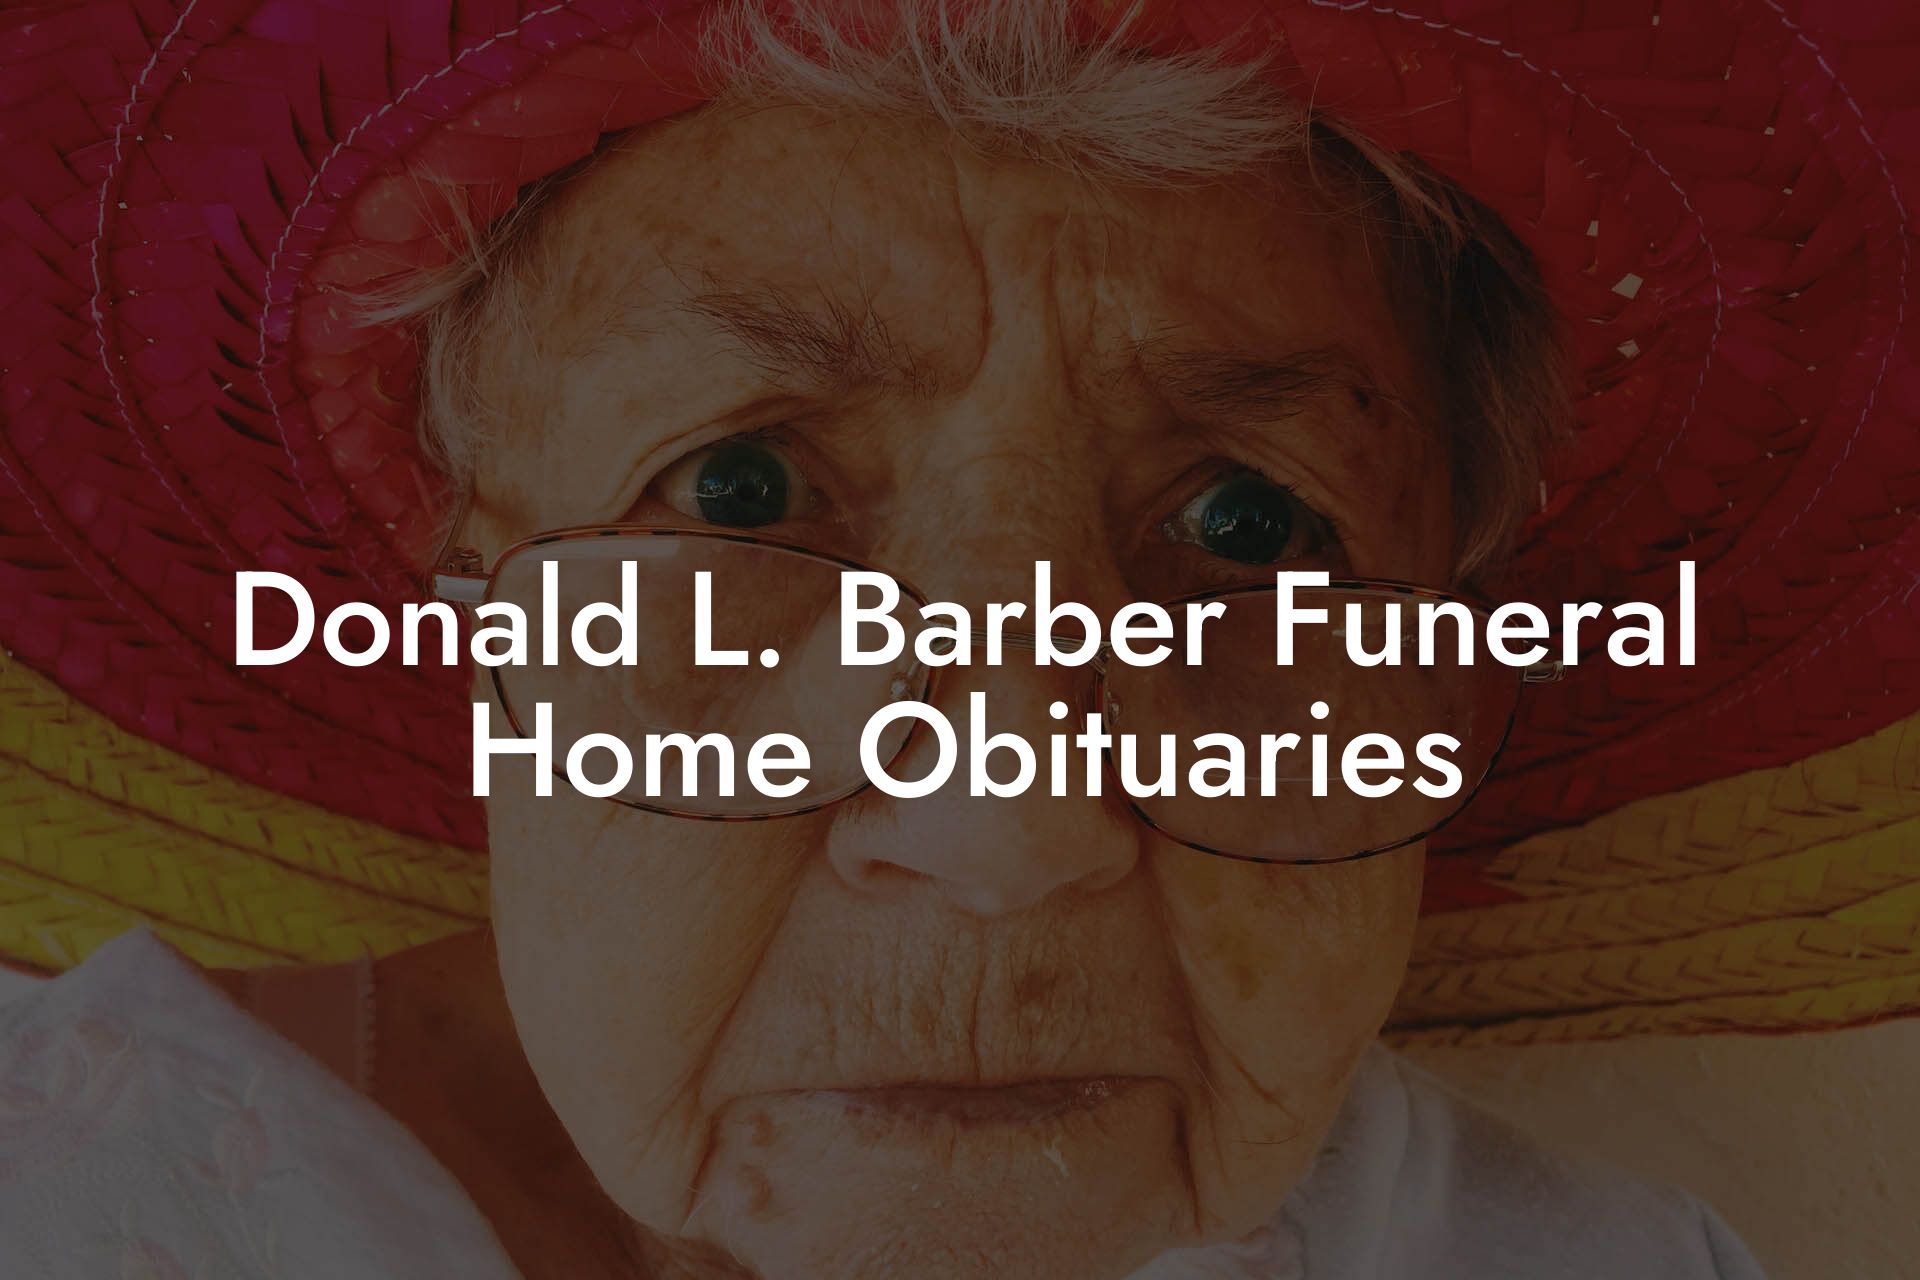 Donald L. Barber Funeral Home Obituaries